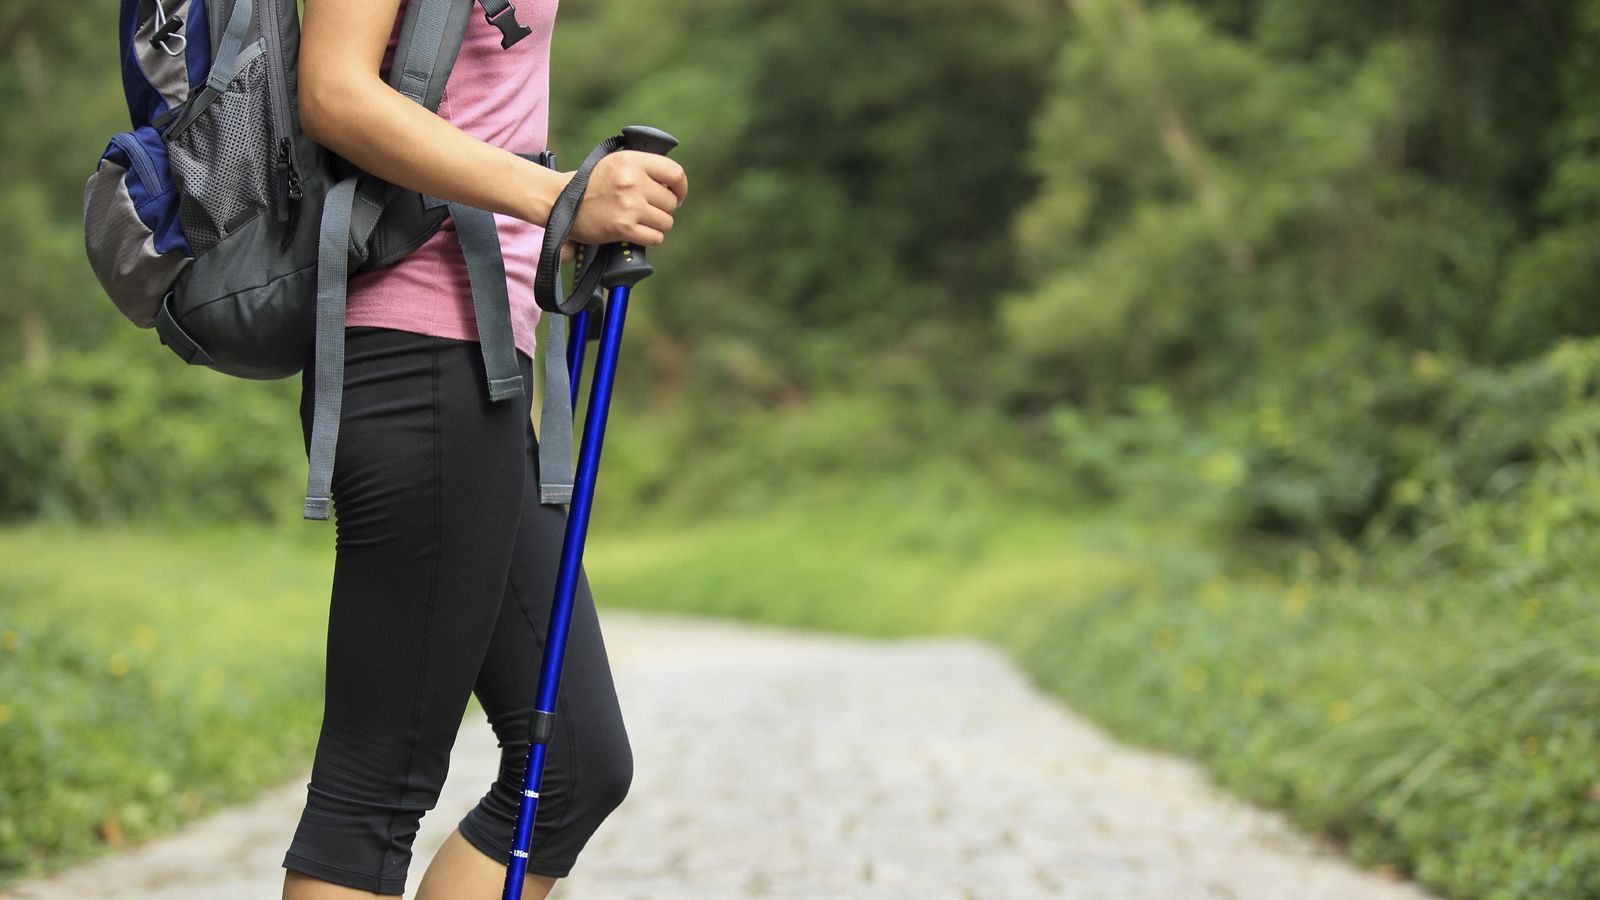 los 10 beneficios para la salud que tiene caminar 10 000 pasos todos los dias Merca2.es